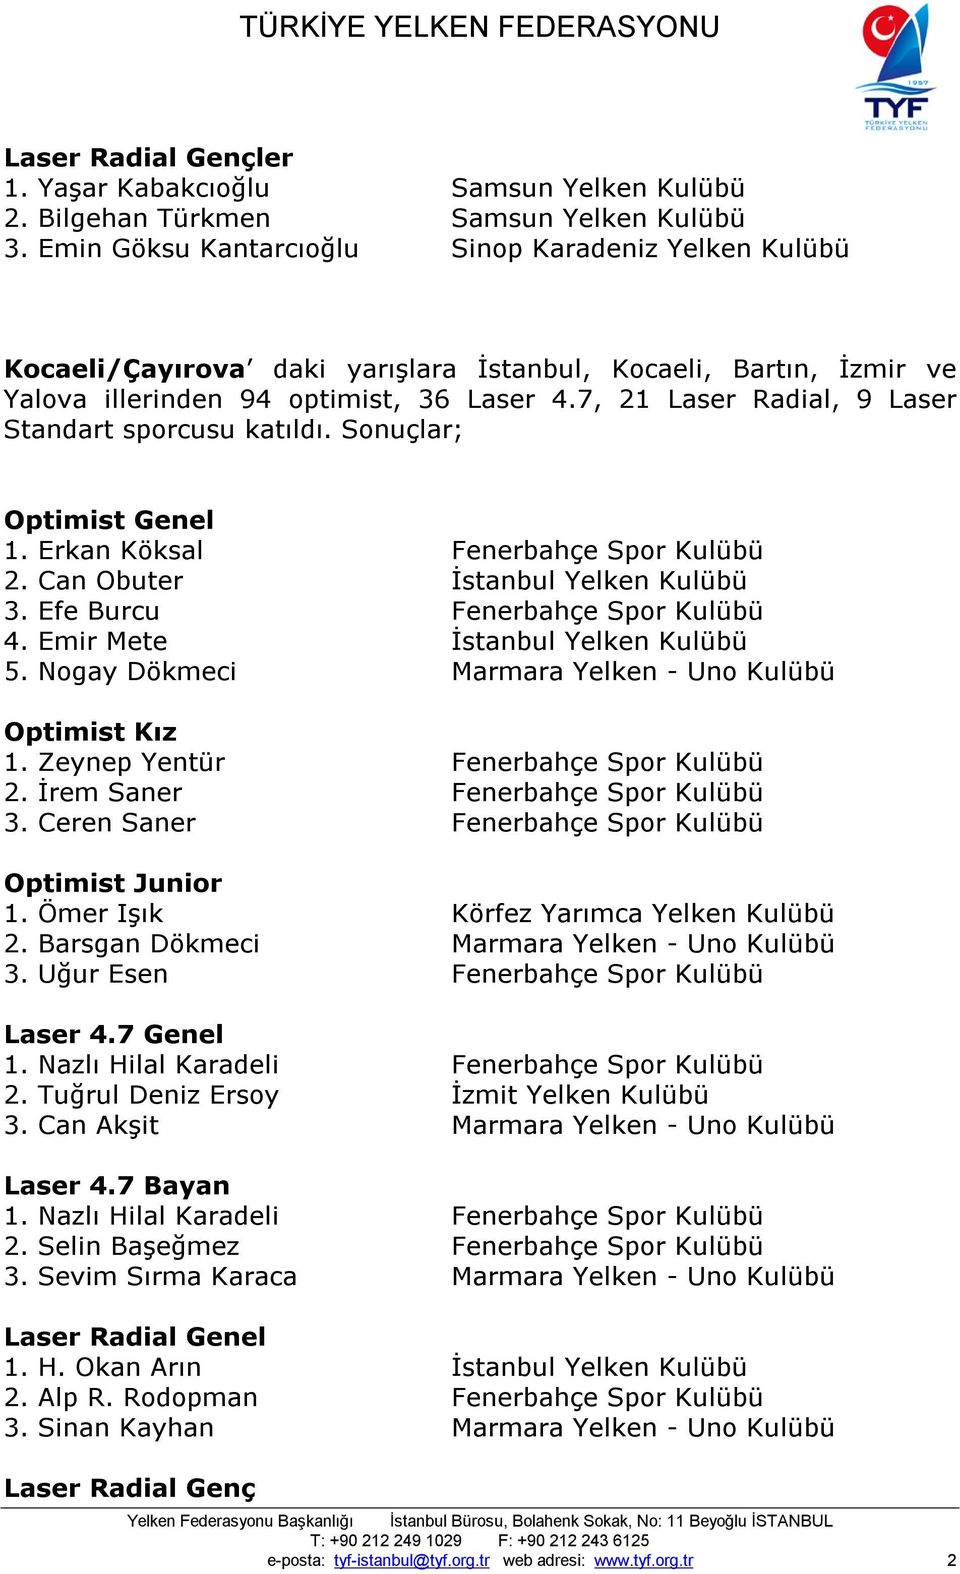 7, 21 Laser Radial, 9 Laser Standart sporcusu katıldı. Sonuçlar; 1. Erkan Köksal Fenerbahçe Spor Kulübü 2. Can Obuter İstanbul Yelken Kulübü 3. Efe Burcu Fenerbahçe Spor Kulübü 4.